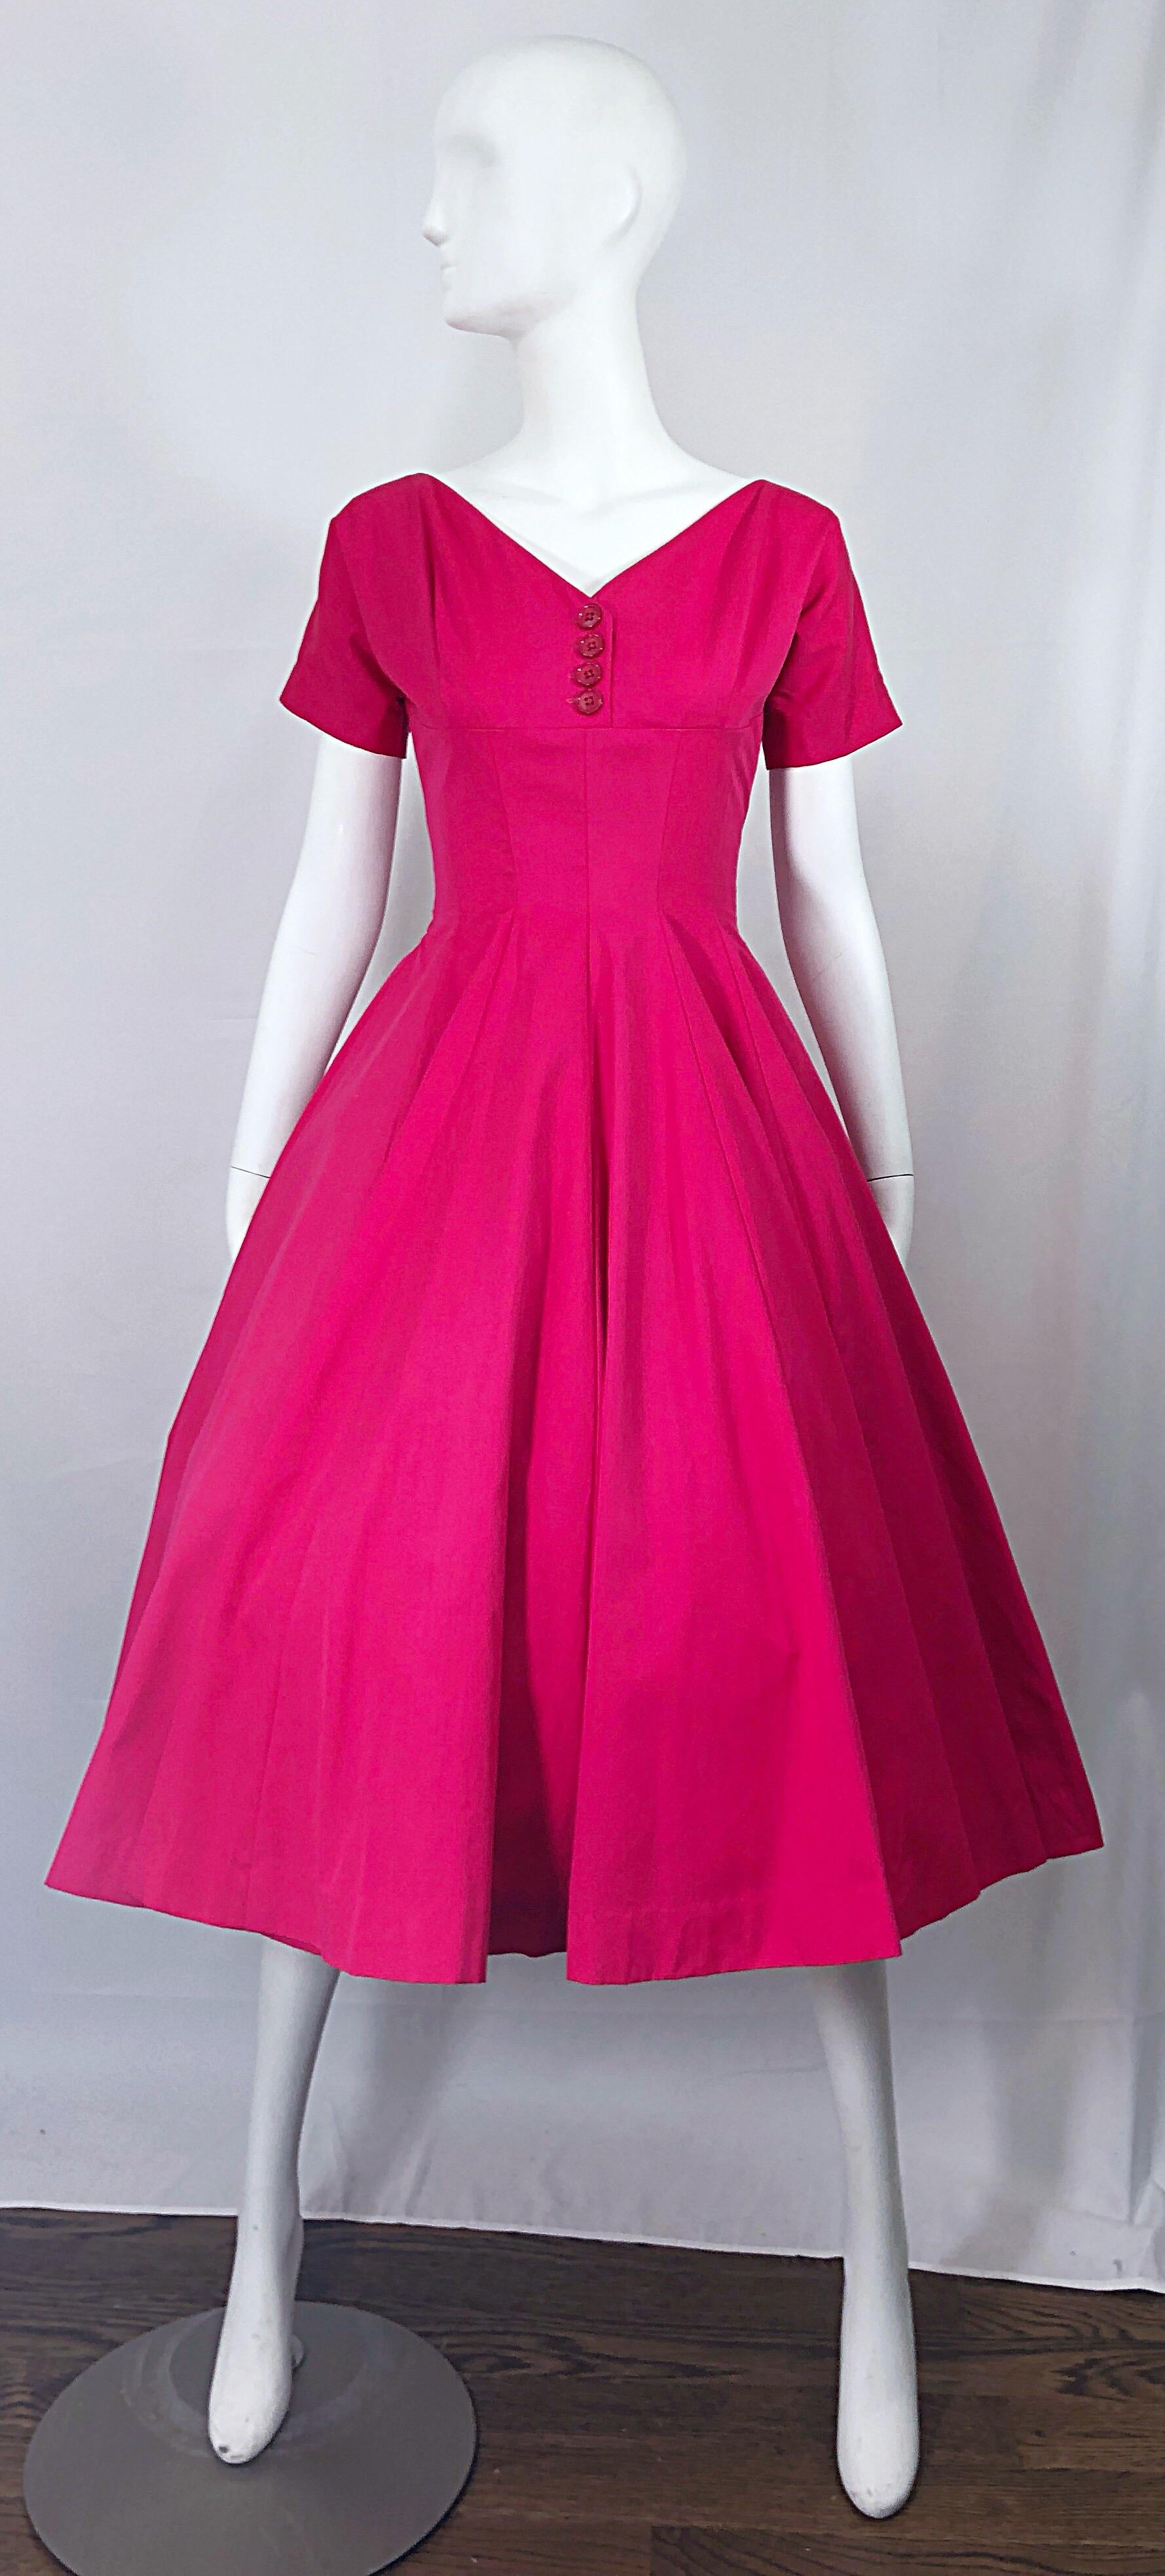 Magnifique robe de cocktail 'New Look' ANNE FOGARTY rose vif en soie et rayonne des années 1950 ! Comporte un corsage ajusté avec des boutons roses fantaisie au centre du buste. La jupe ample et flatteuse peut accueillir une crinoline pour plus